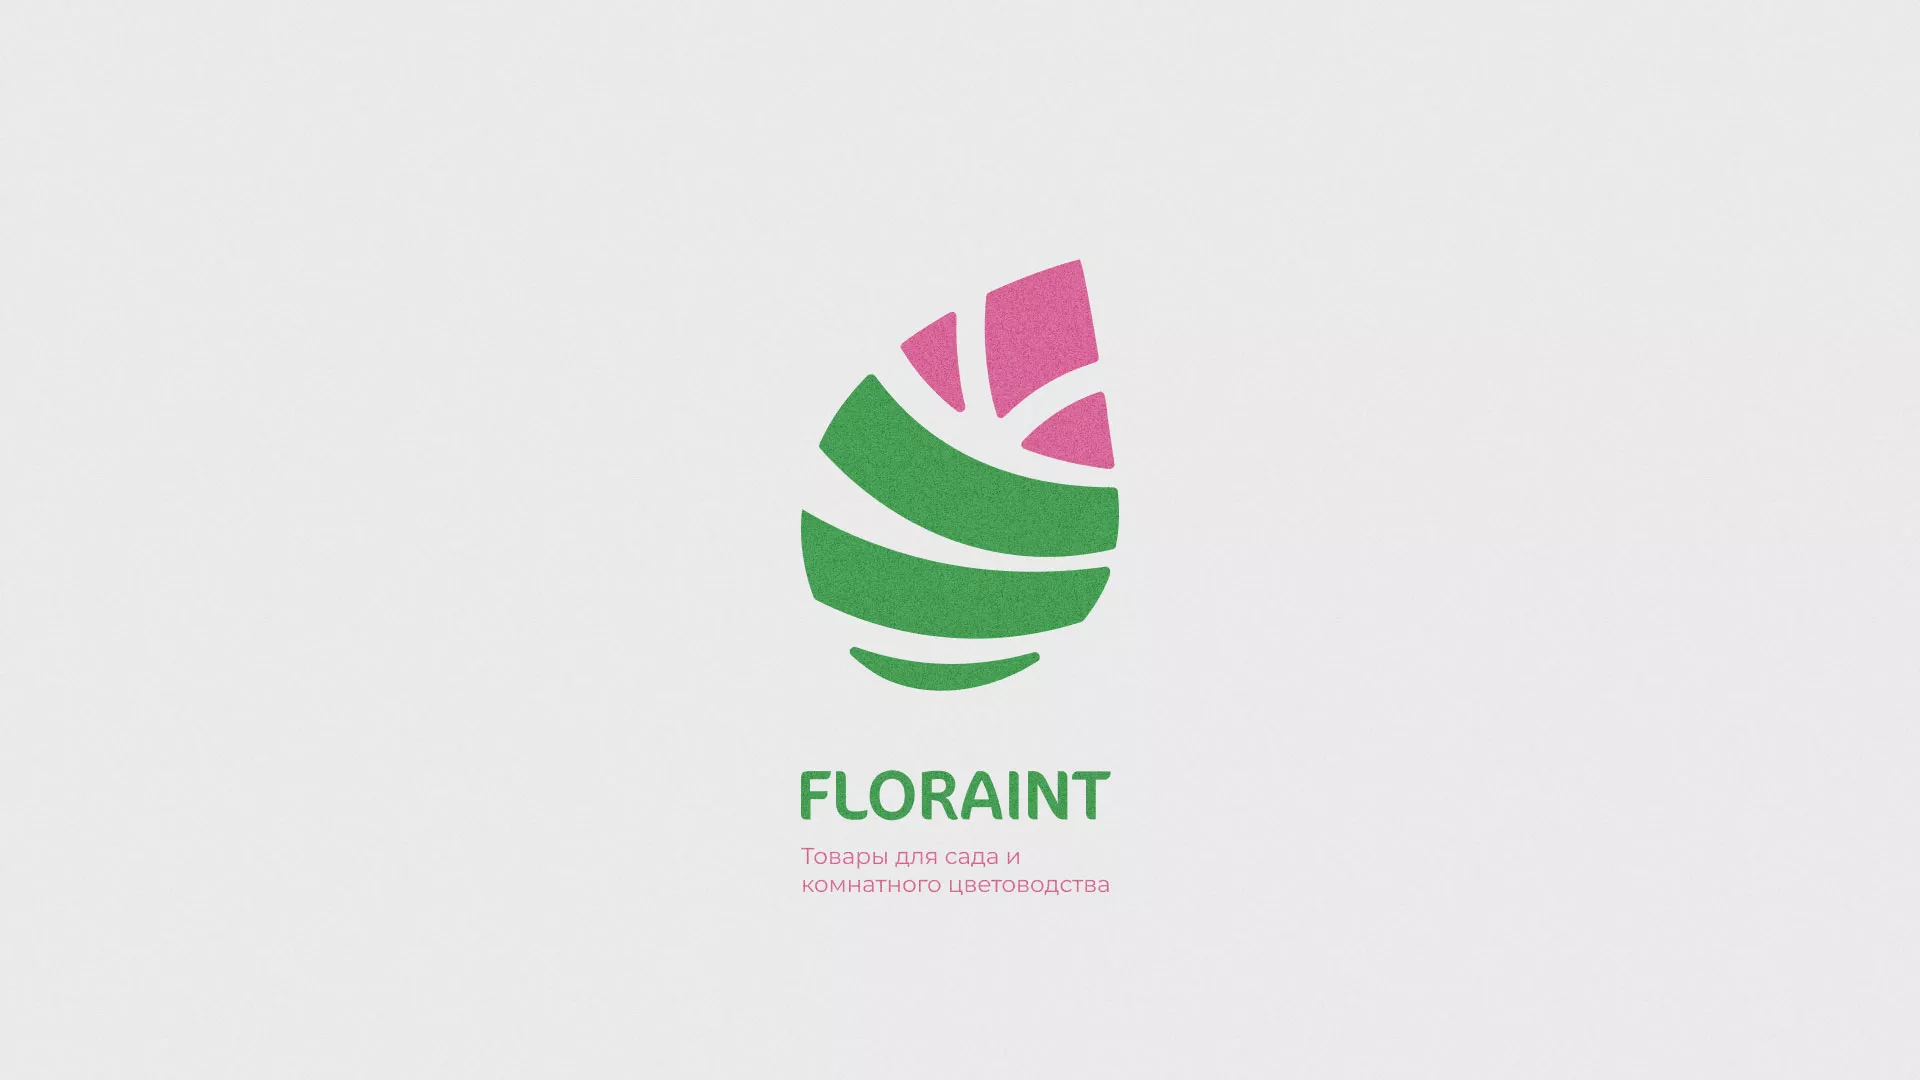 Разработка оформления профиля Instagram для магазина «Floraint» в Андреаполе